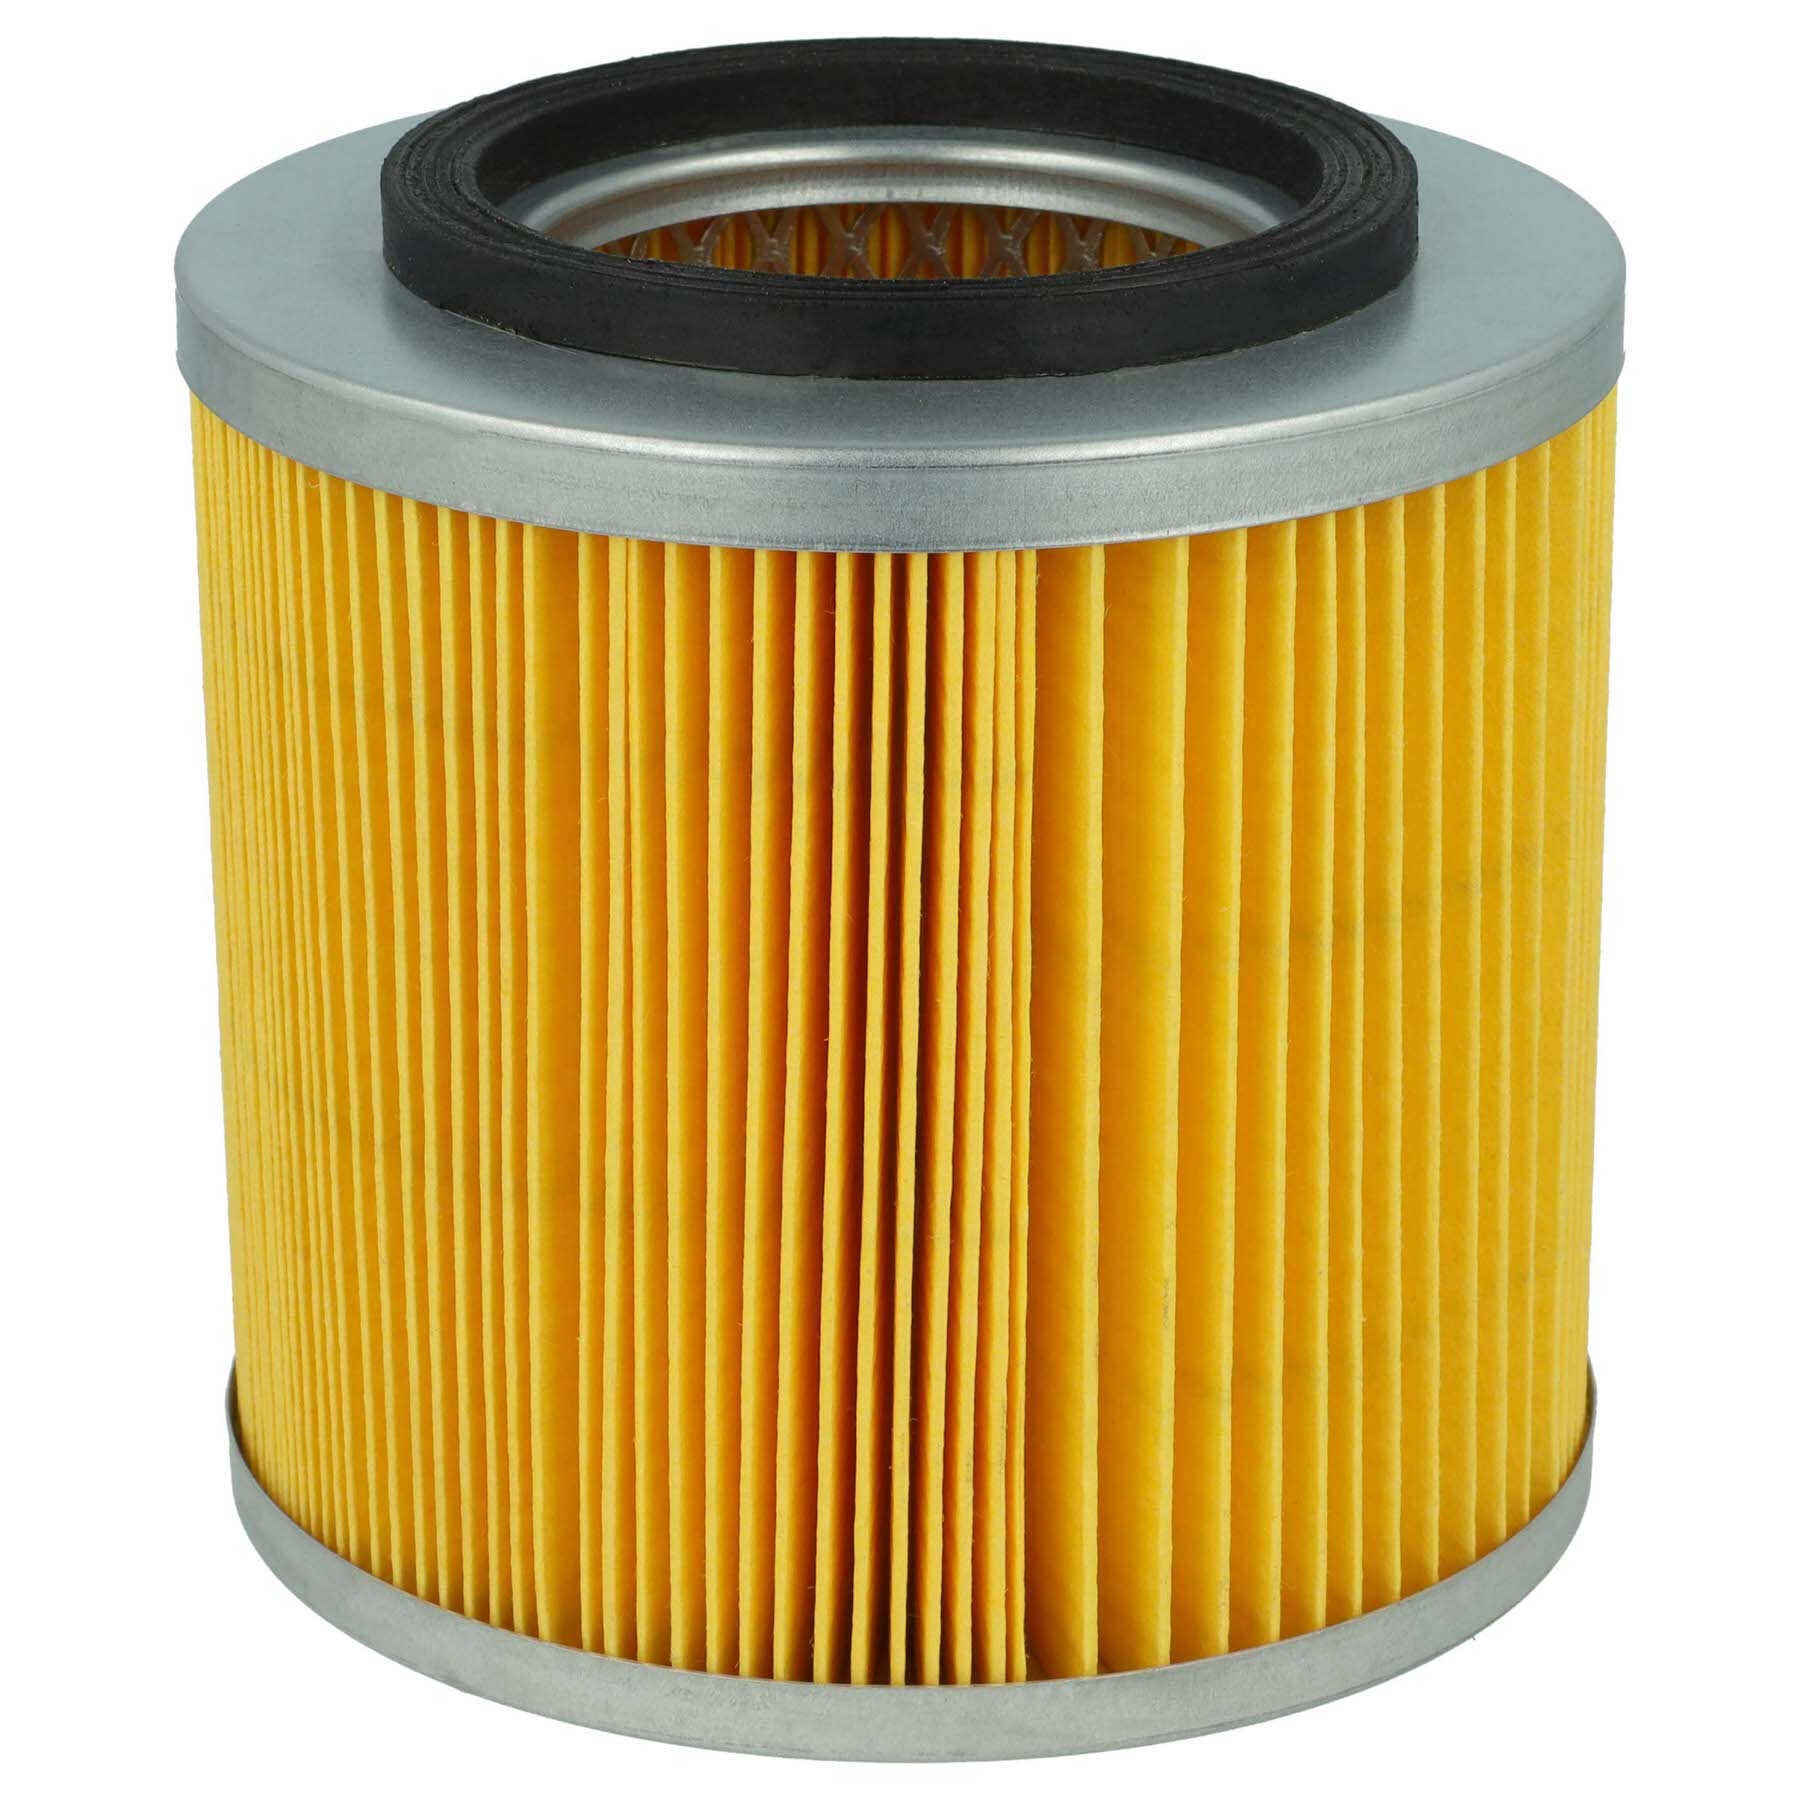 Filtre plissé plat de rechange, filtre plat, filtre d'aspirateur pour  aspirateurs eau et poussière Karcher